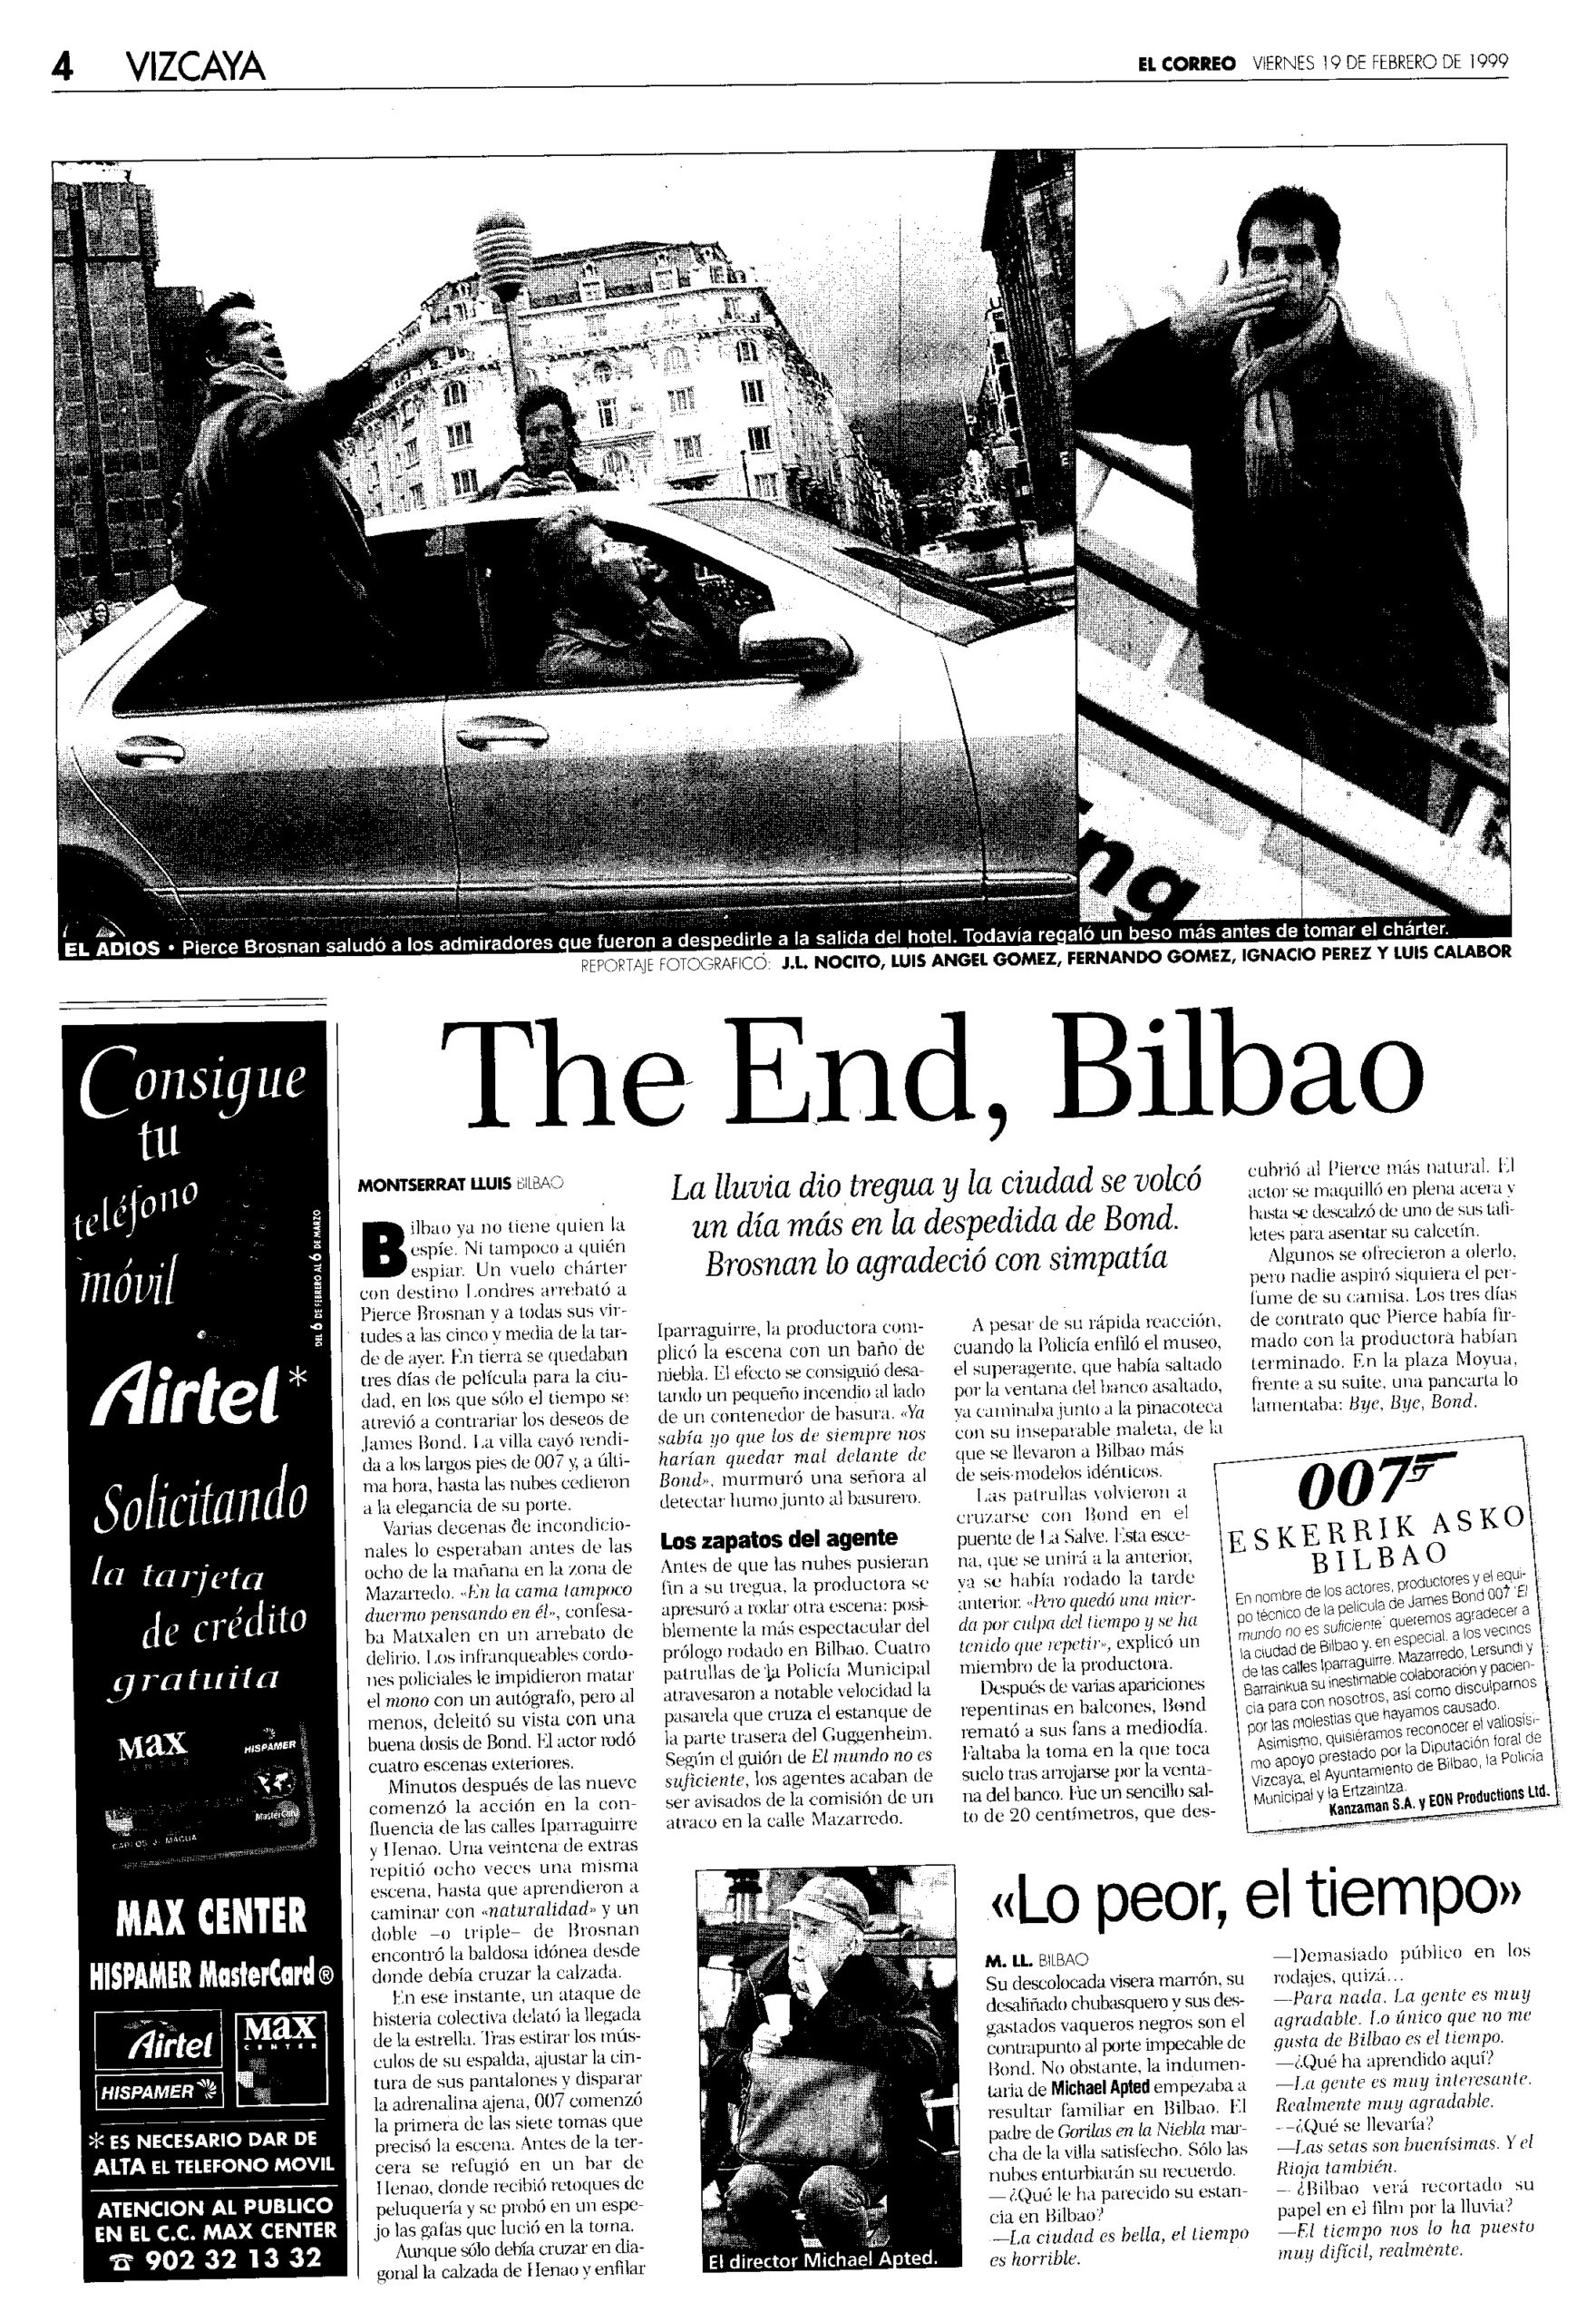 19 1999 02 19 El Correo Vizcaya 04 Rodaje Bilbao scaled